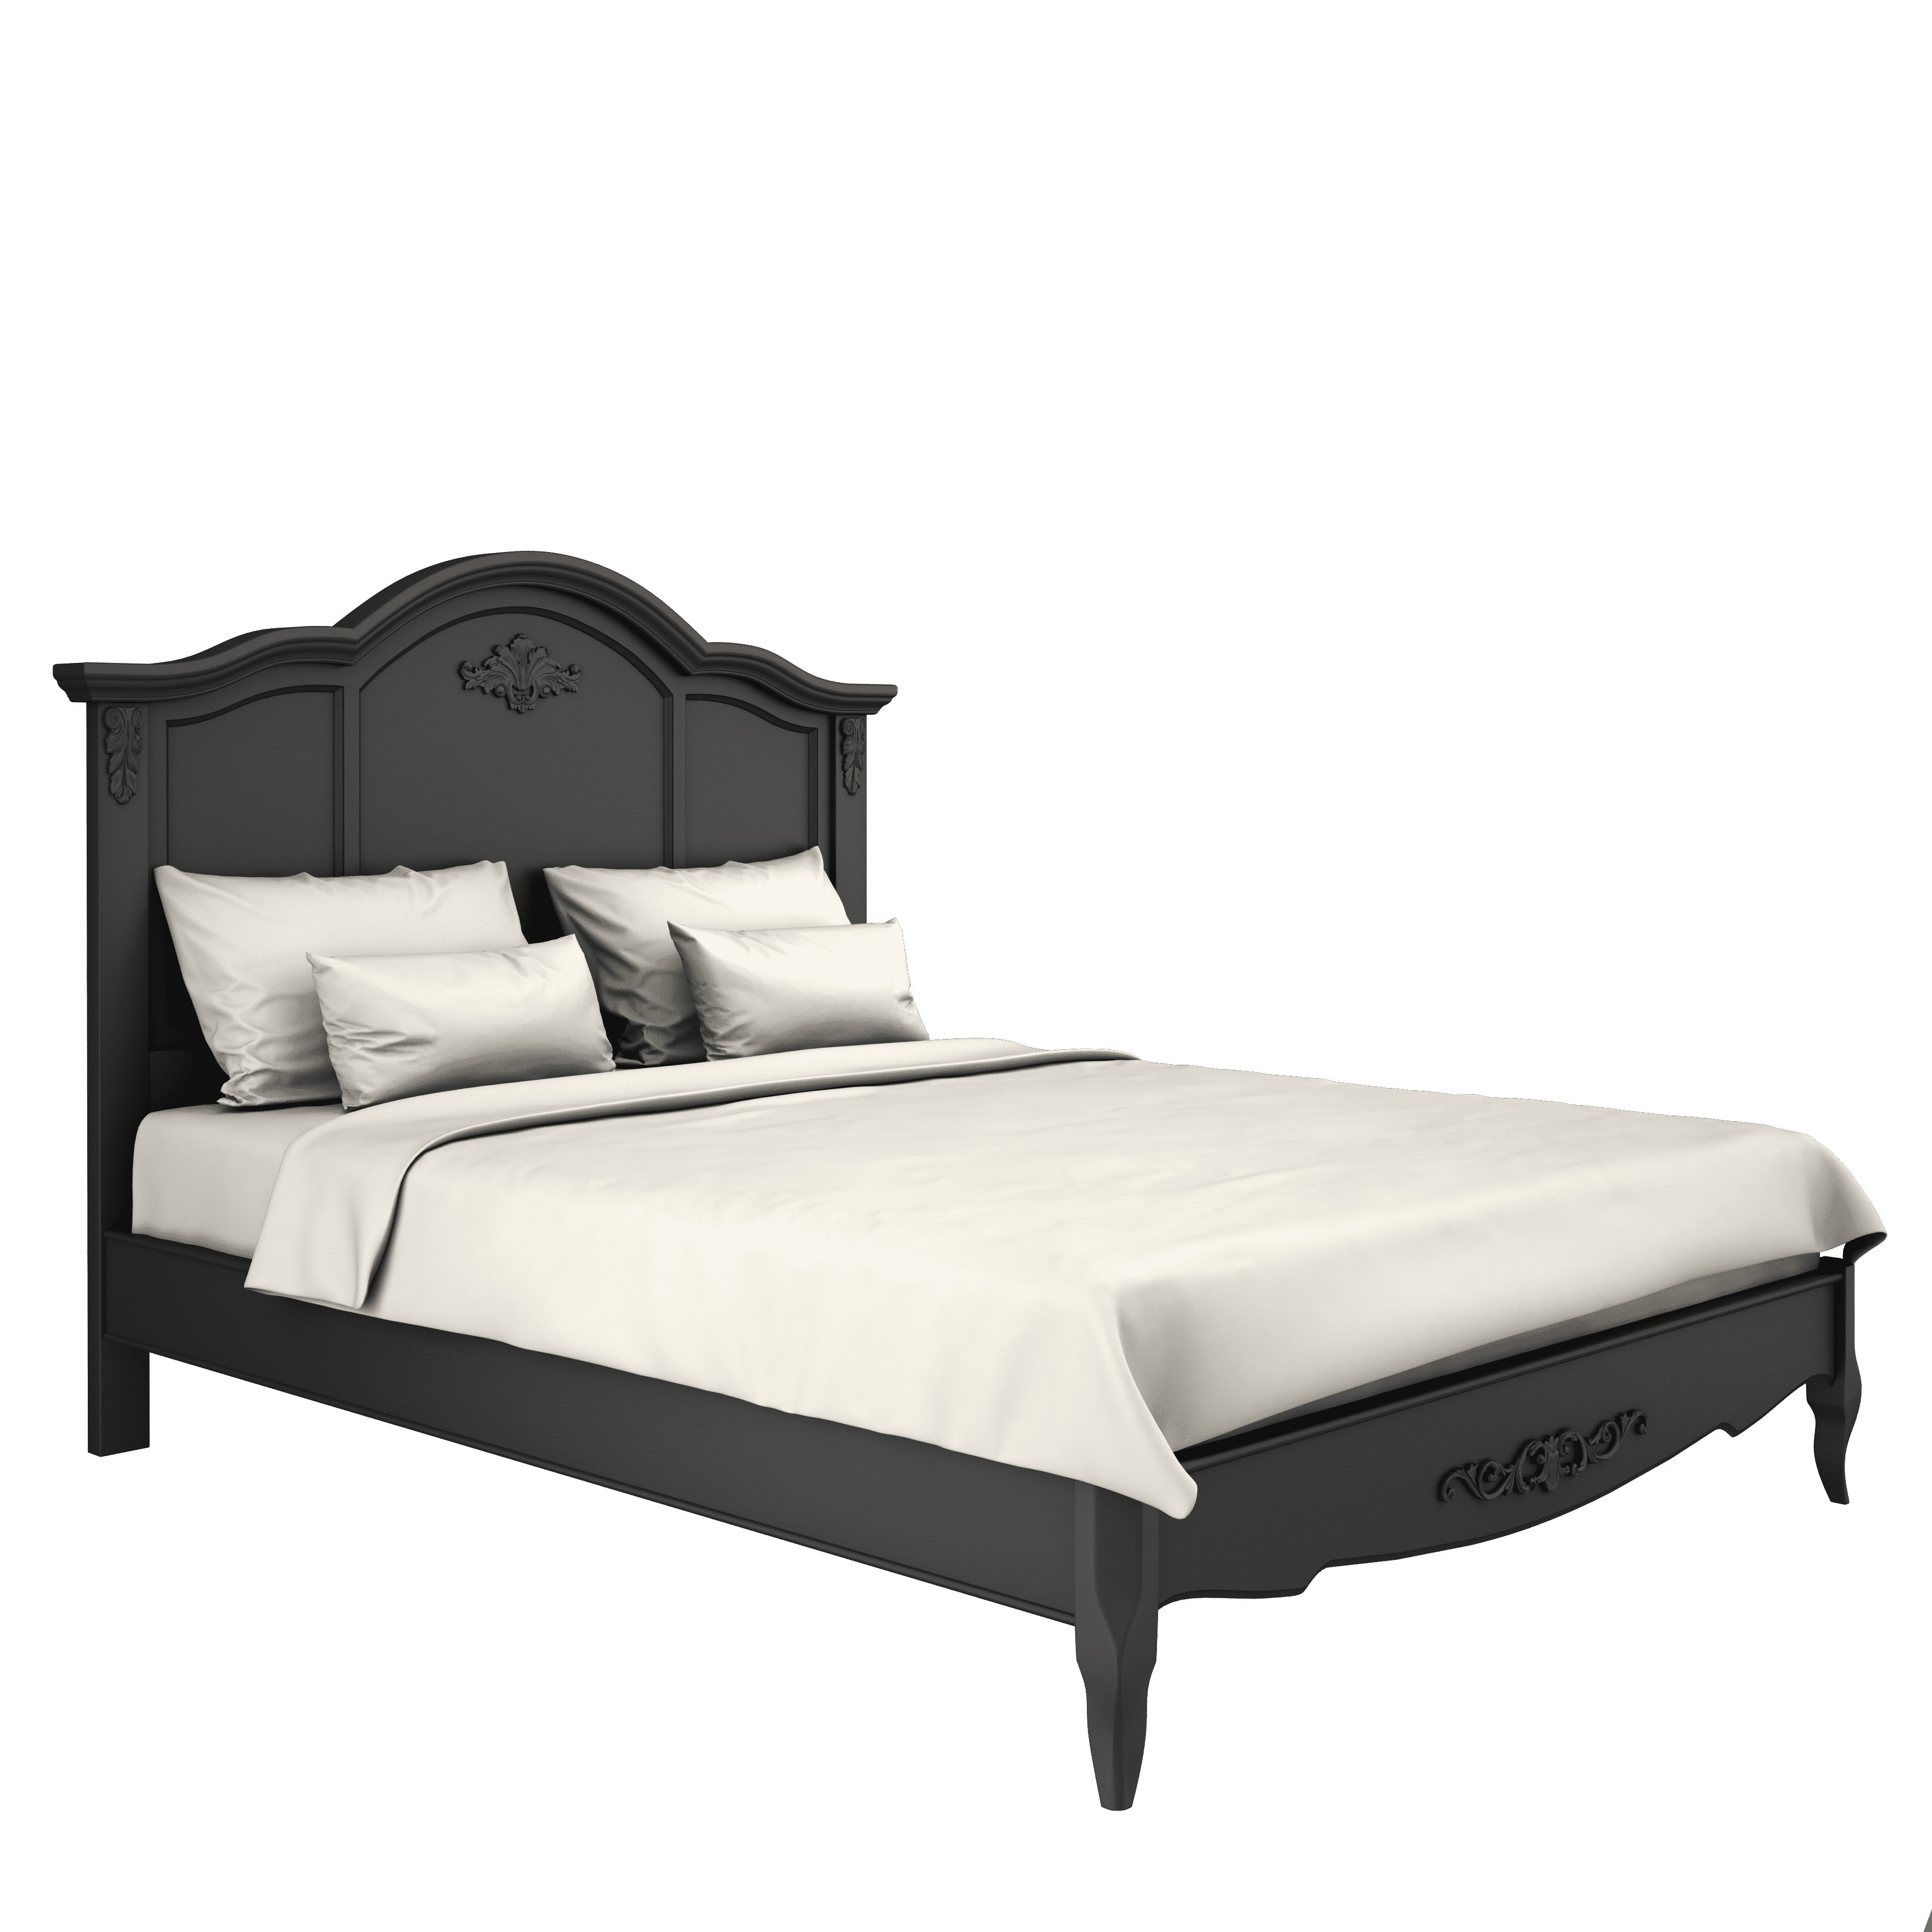 Кровать Aletan Provence, односпальная, 120x200 см, цвет: черный (B202BL)B202BL